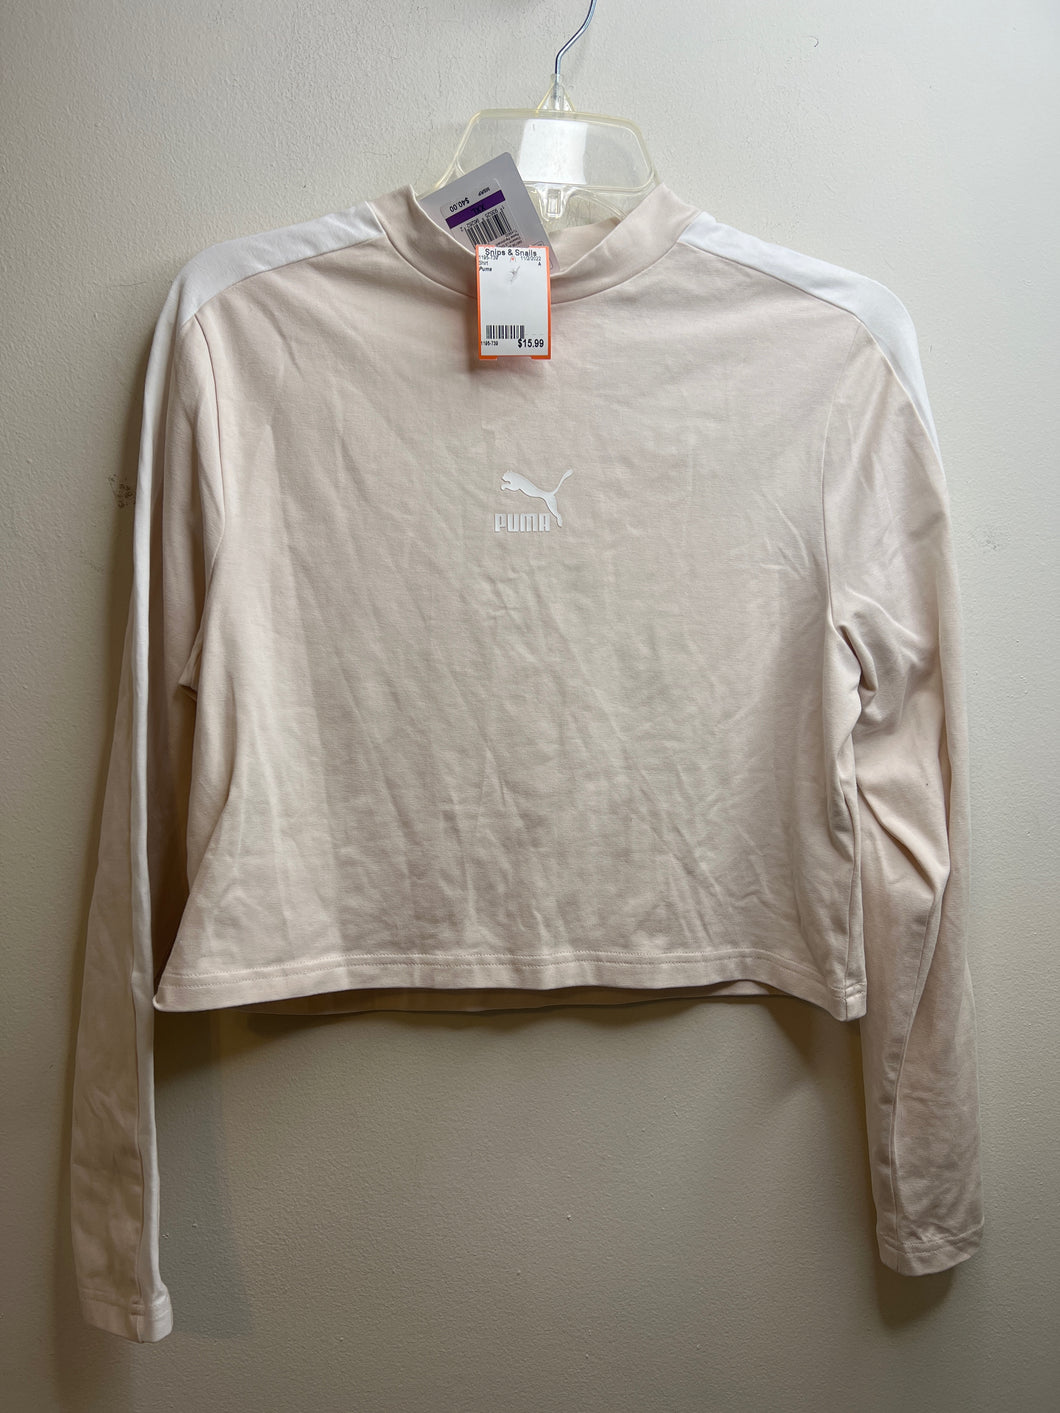 Girls Size 2X (18/20) Puma pink long sleeve crop Shirt BNWT